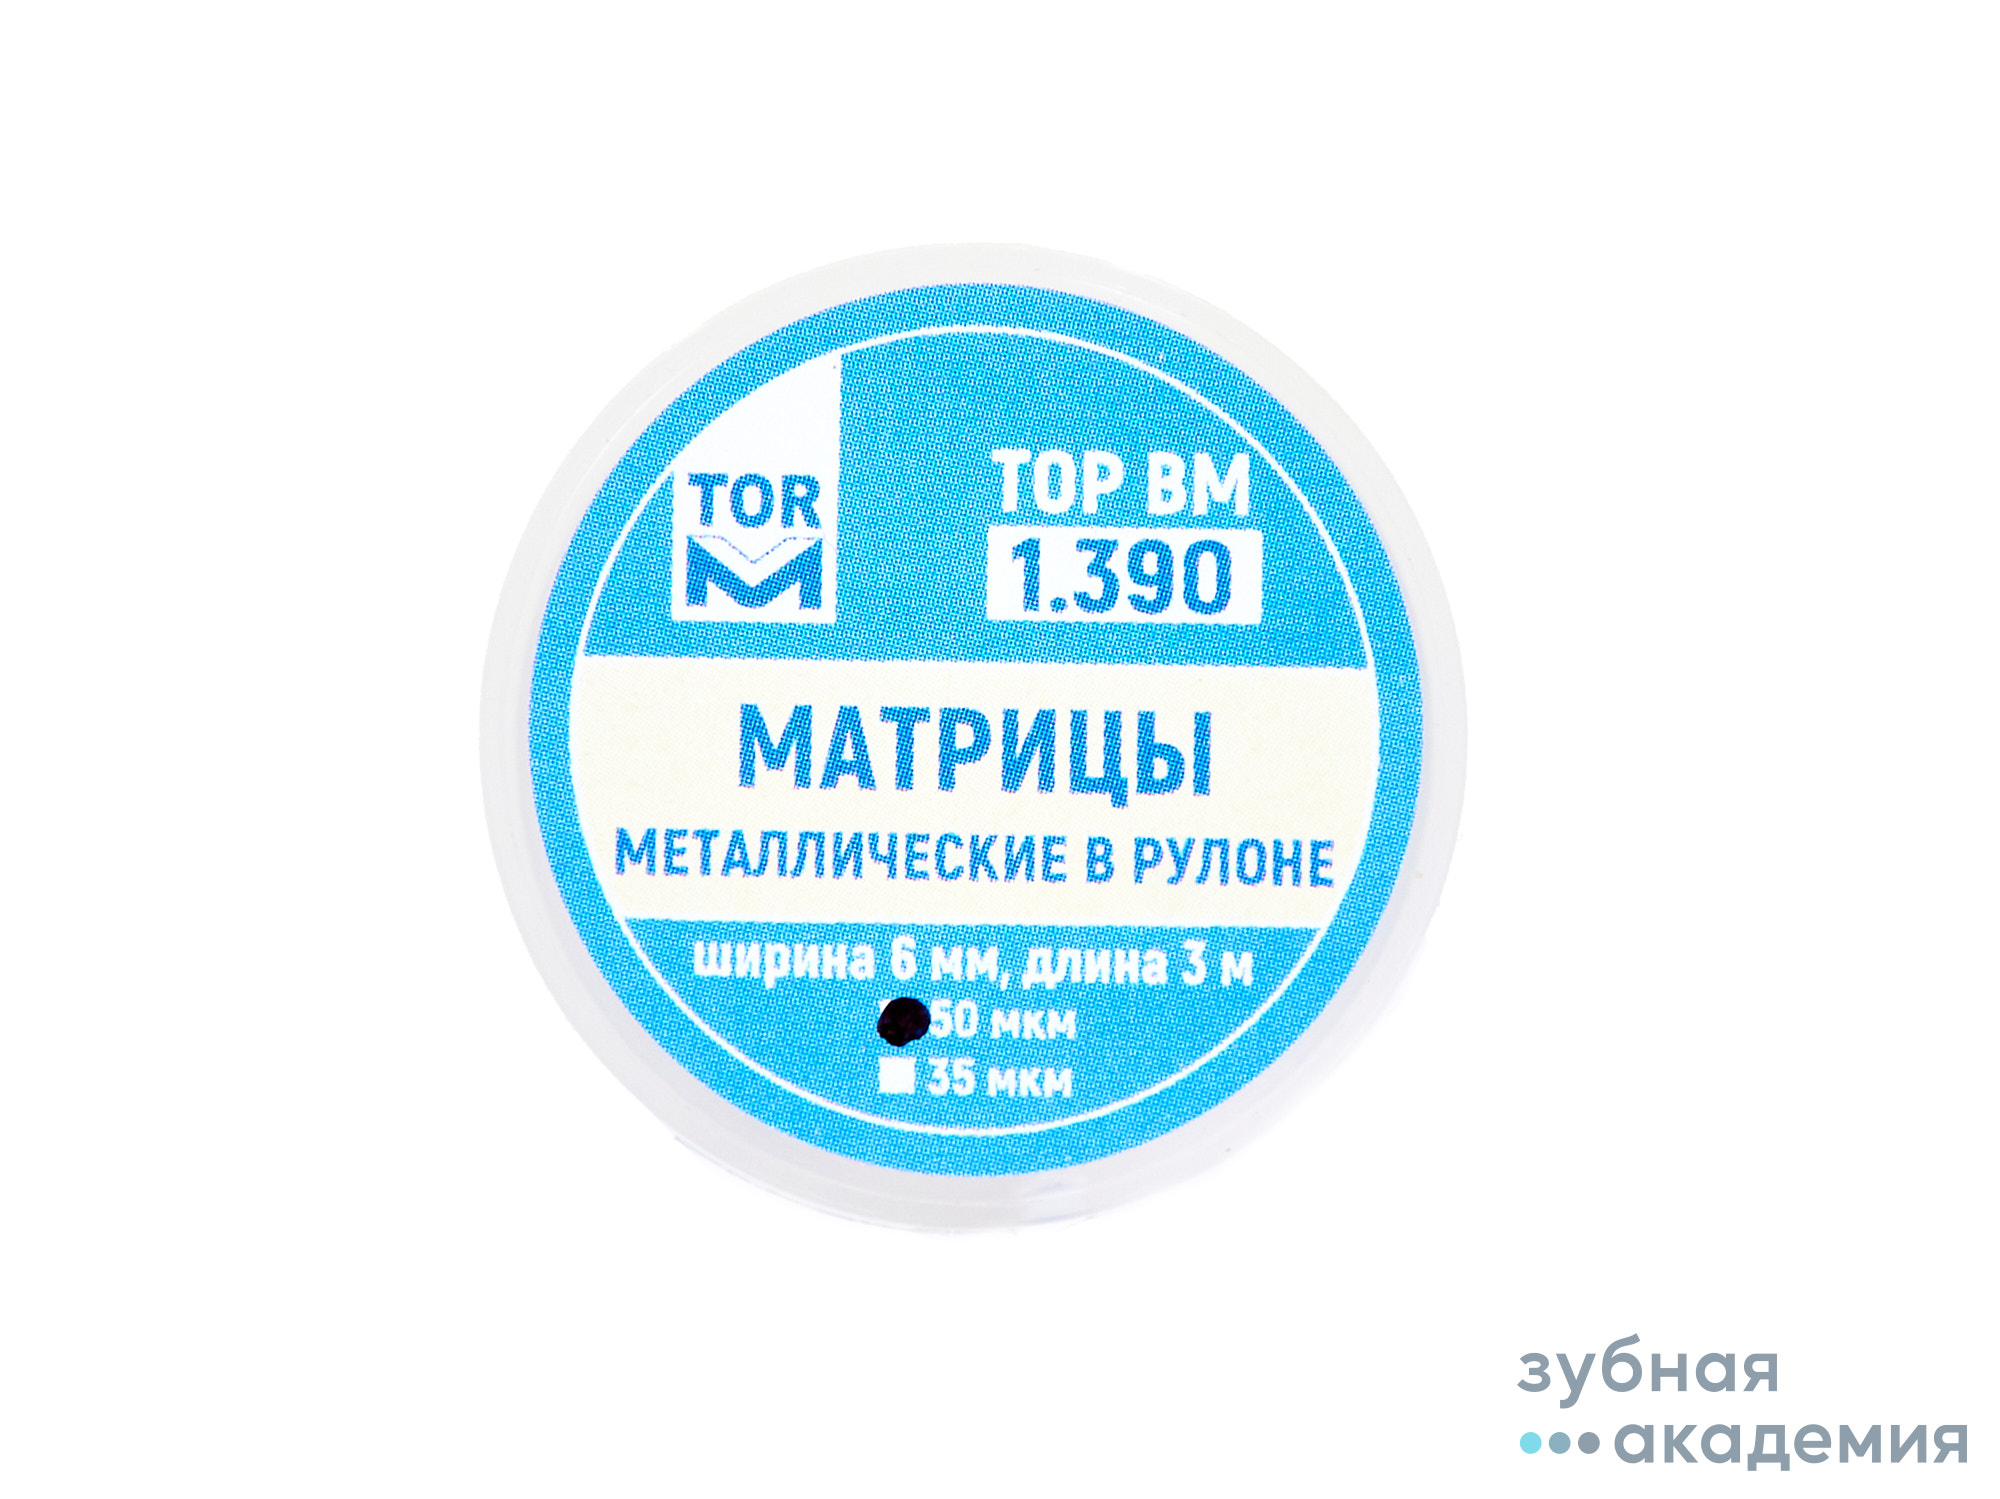 ТОР Матрицы № 1.390 упаковка 3 м /ТОР ВМ/ Россия